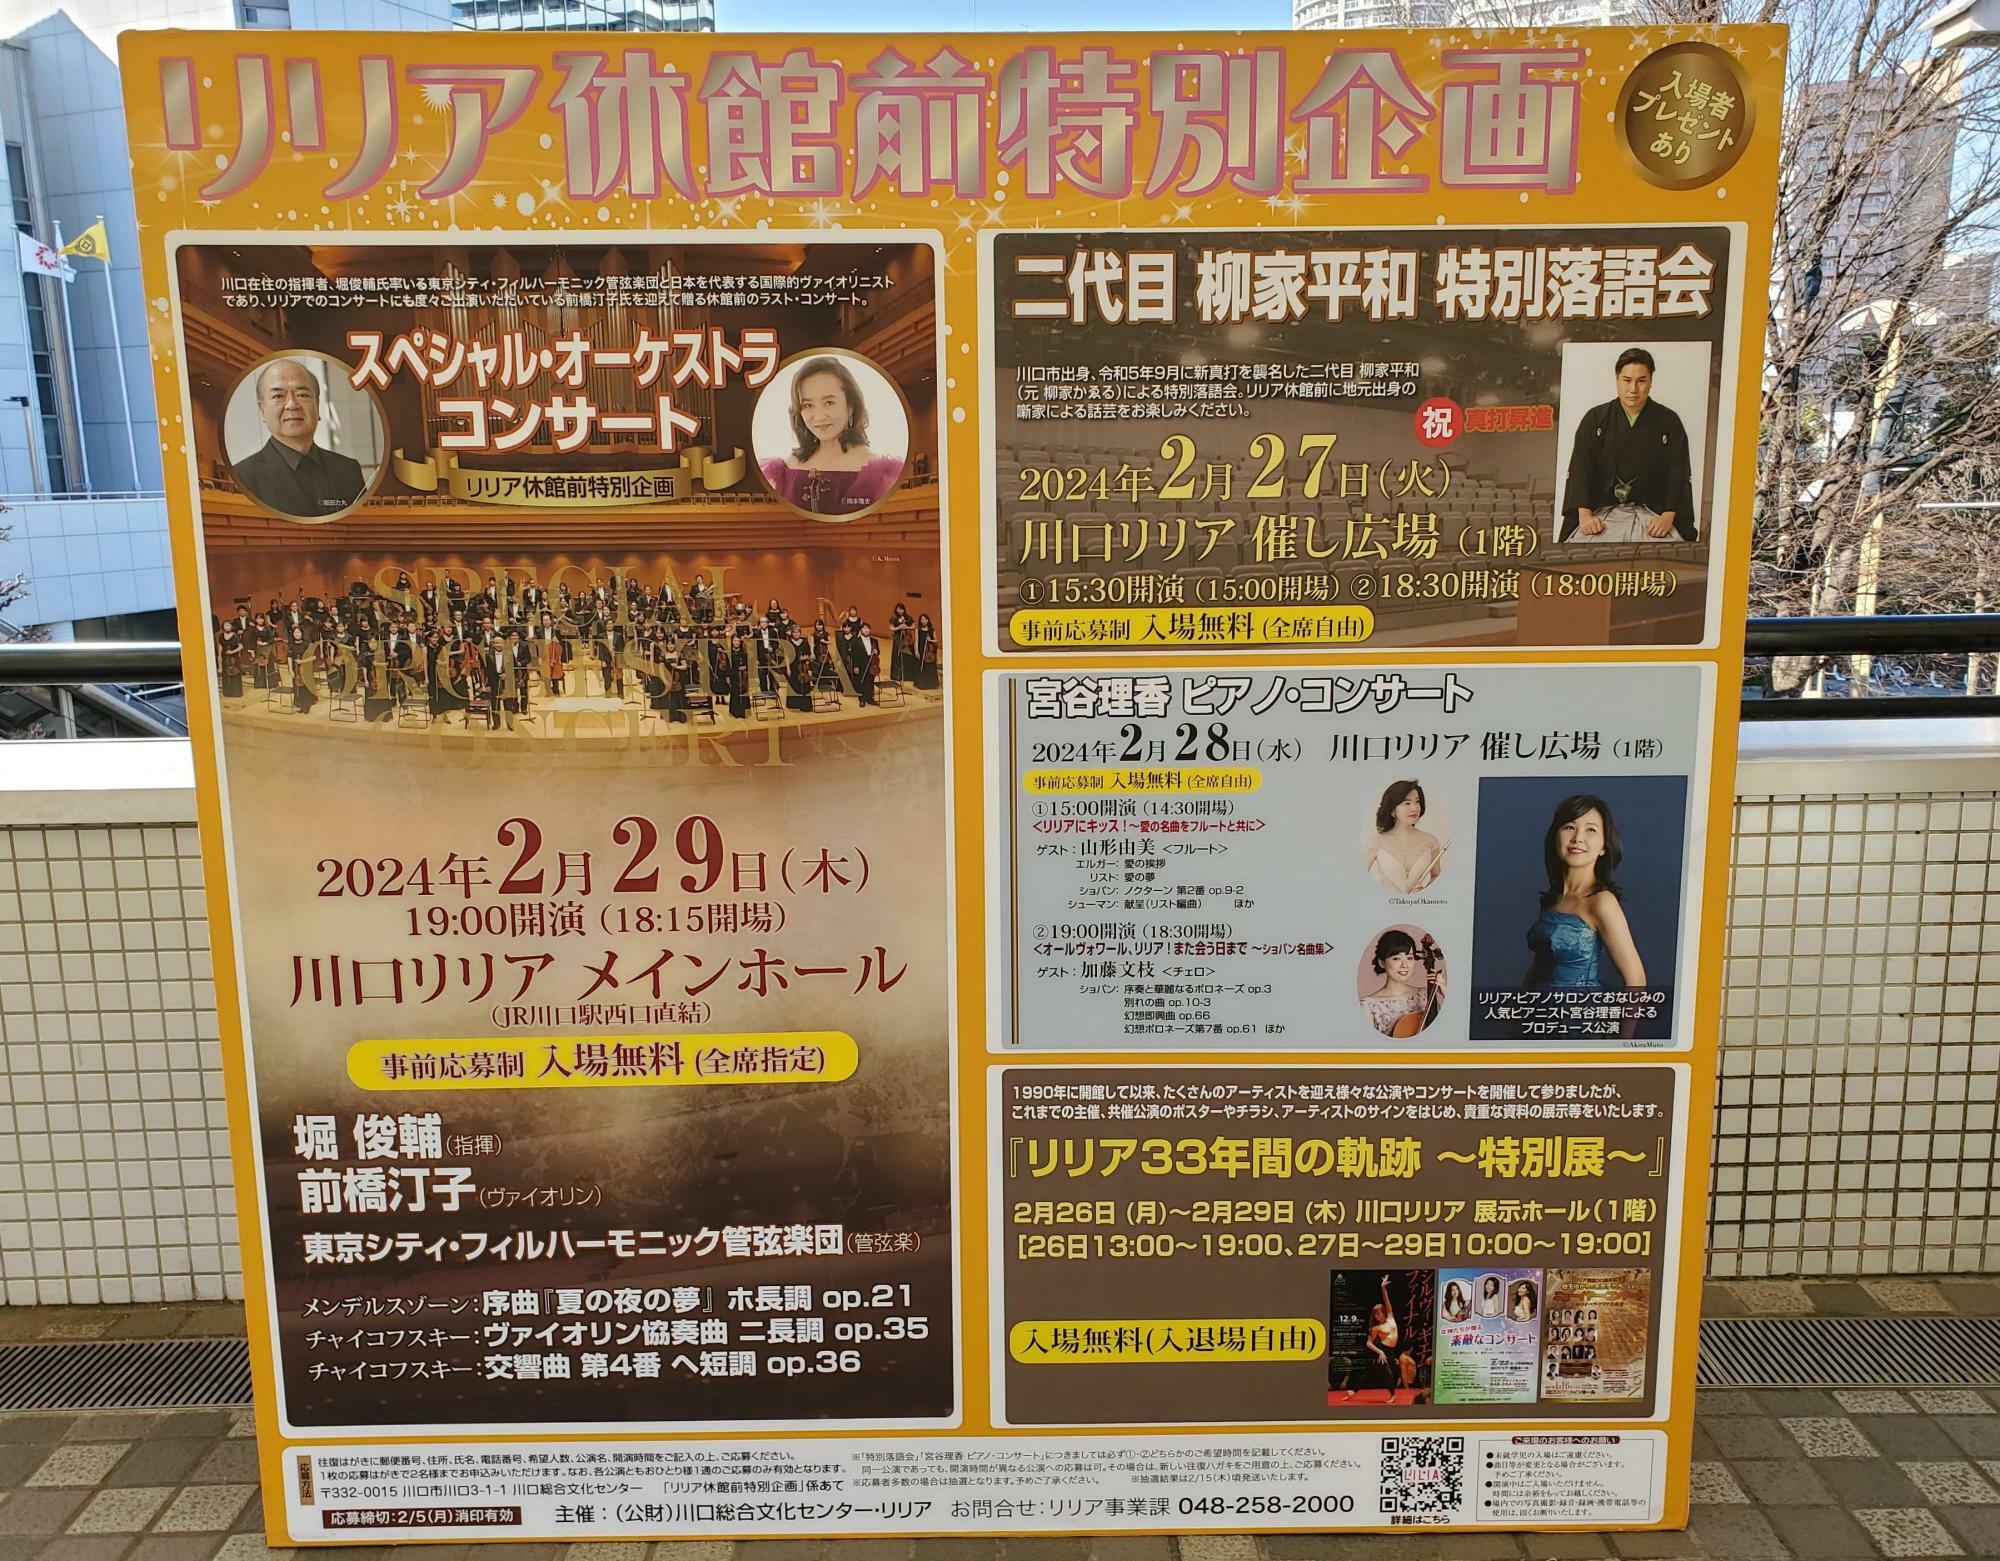 JR川口駅西口にポスターが設置されています